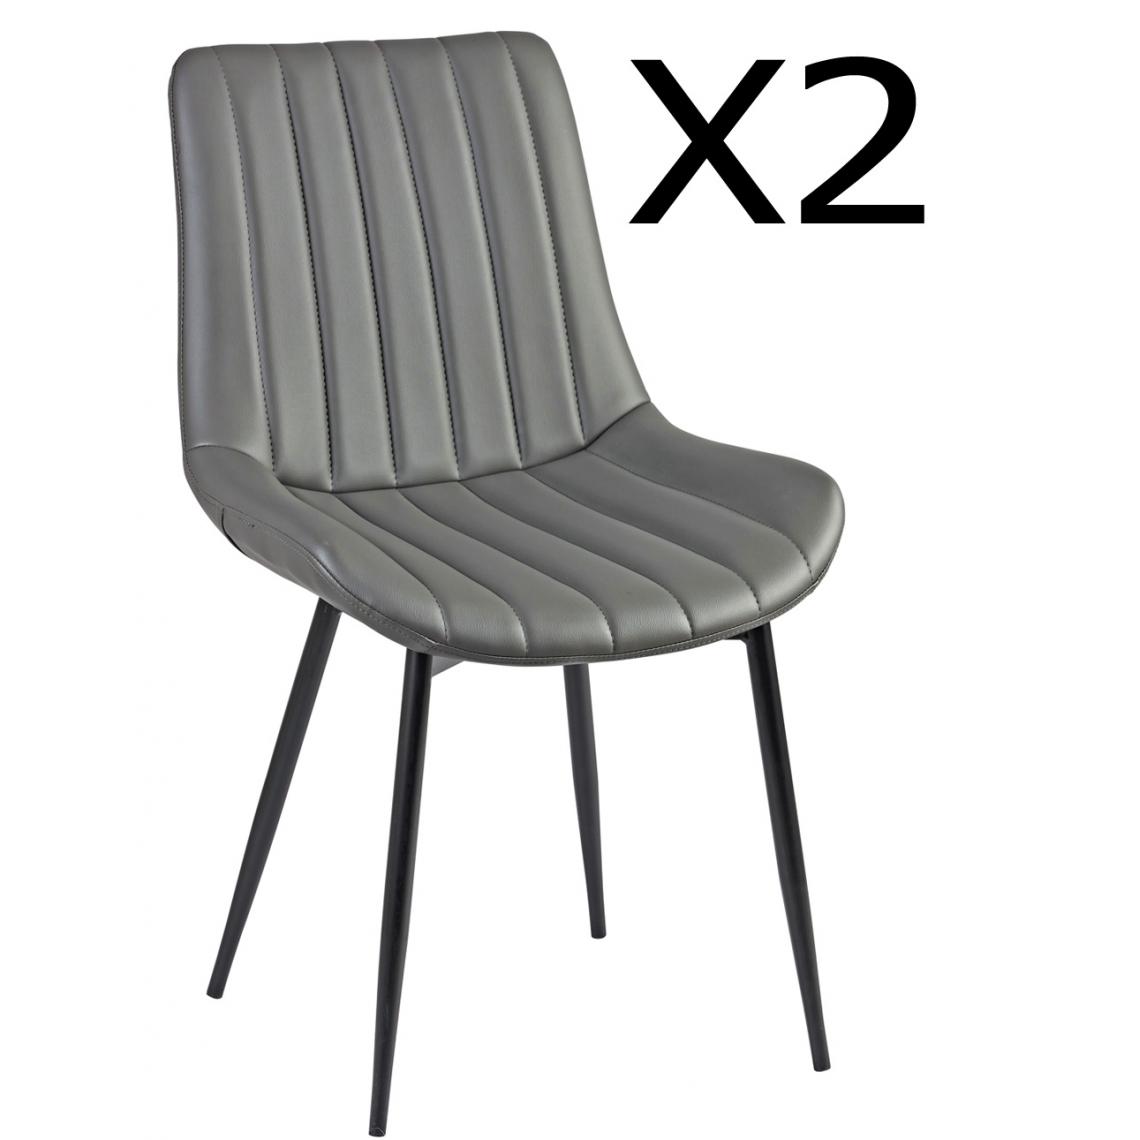 Pegane - Lot de 2 chaises en acier et polypropylène, coloris gris - Dim : L.54 x P.58 x Ht.88 x Ht Ass. 45 cm - Chaises